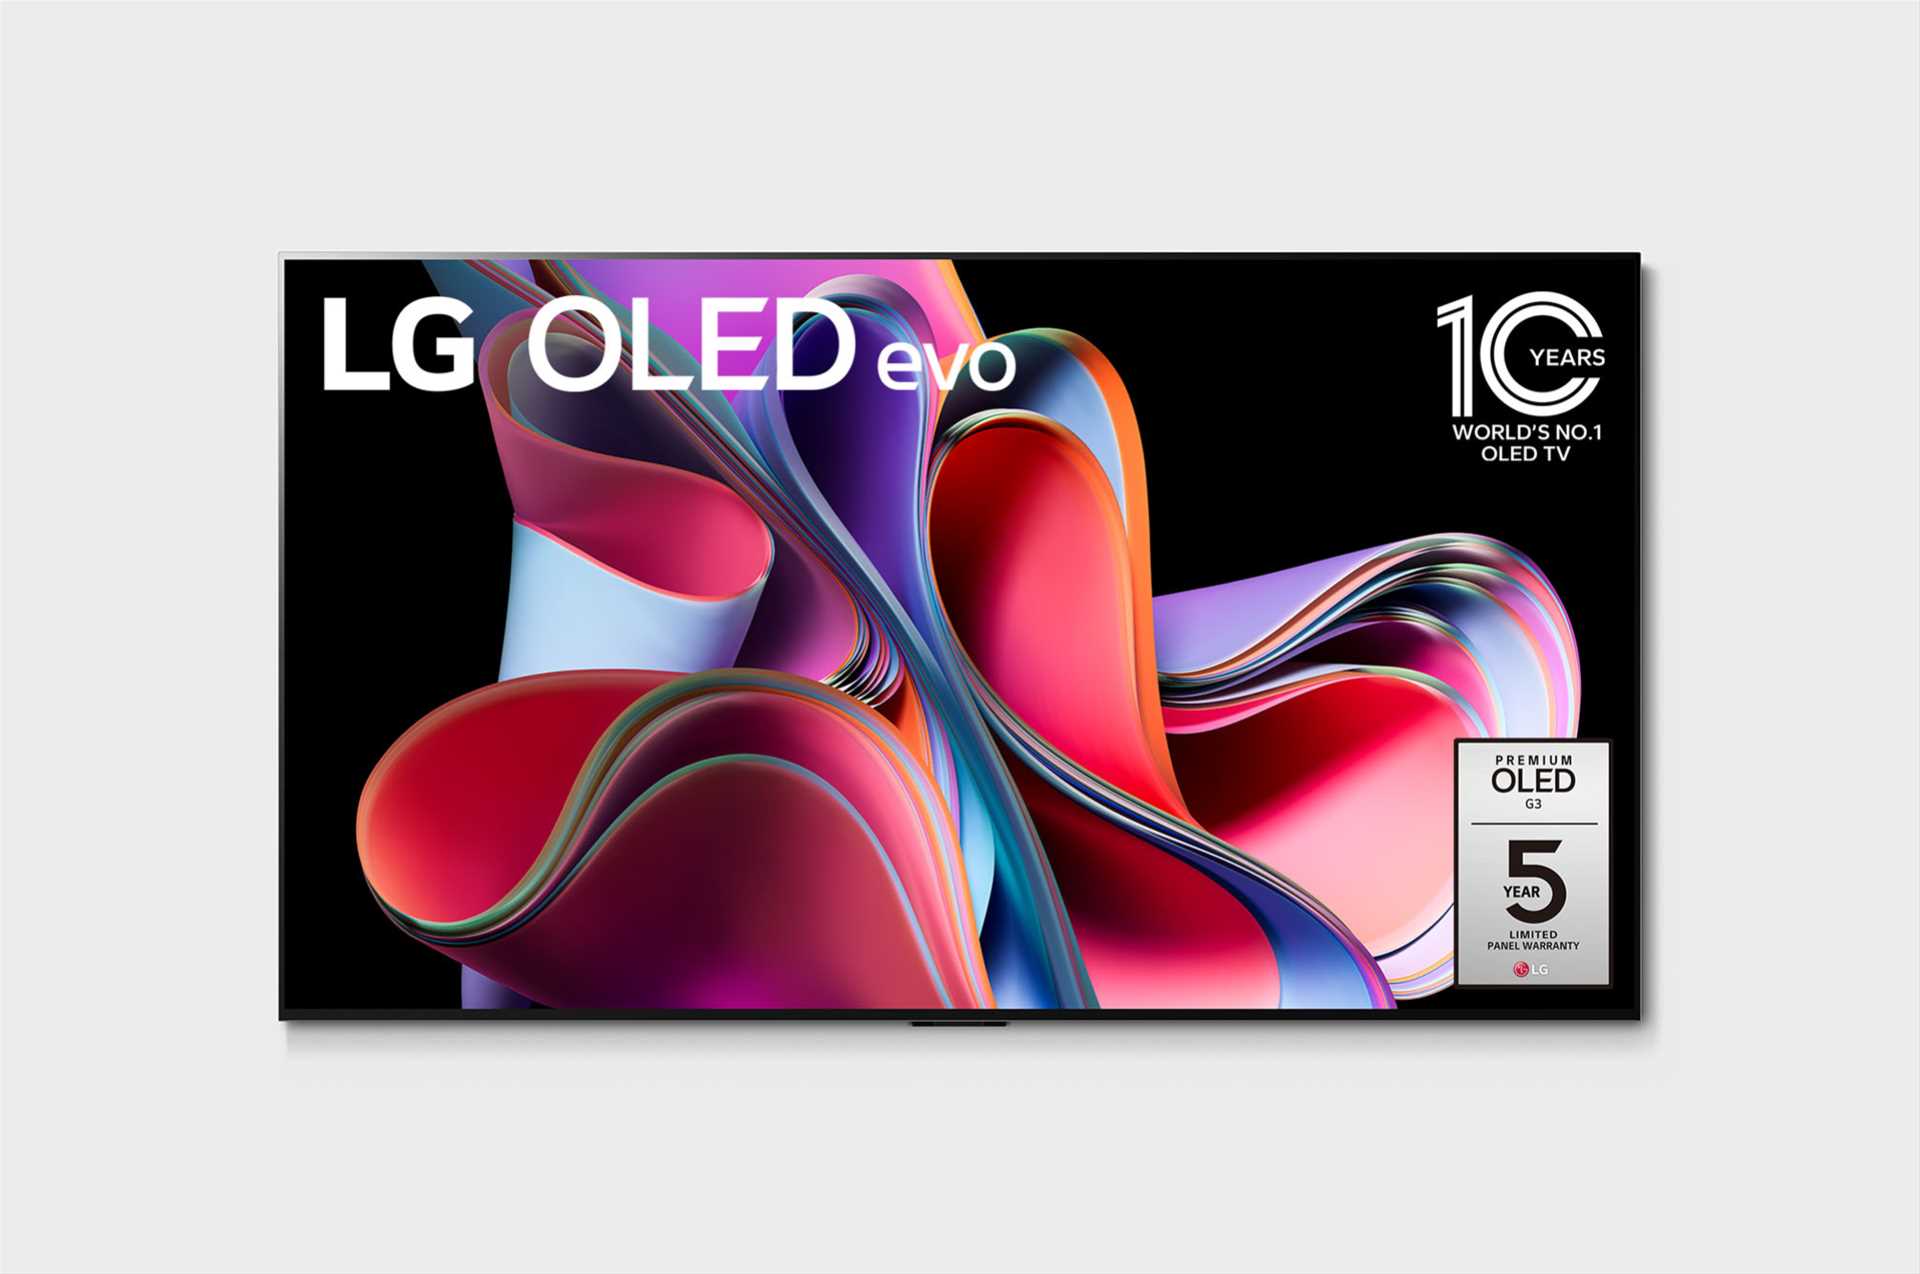 מסך טלוויזיה בטכנולוגיית LG OLED evo Gallery Edition - בגודל 77 אינץ' חכמה ברזולוציית 4K דגם: OLED77G36LA - תמונה 1